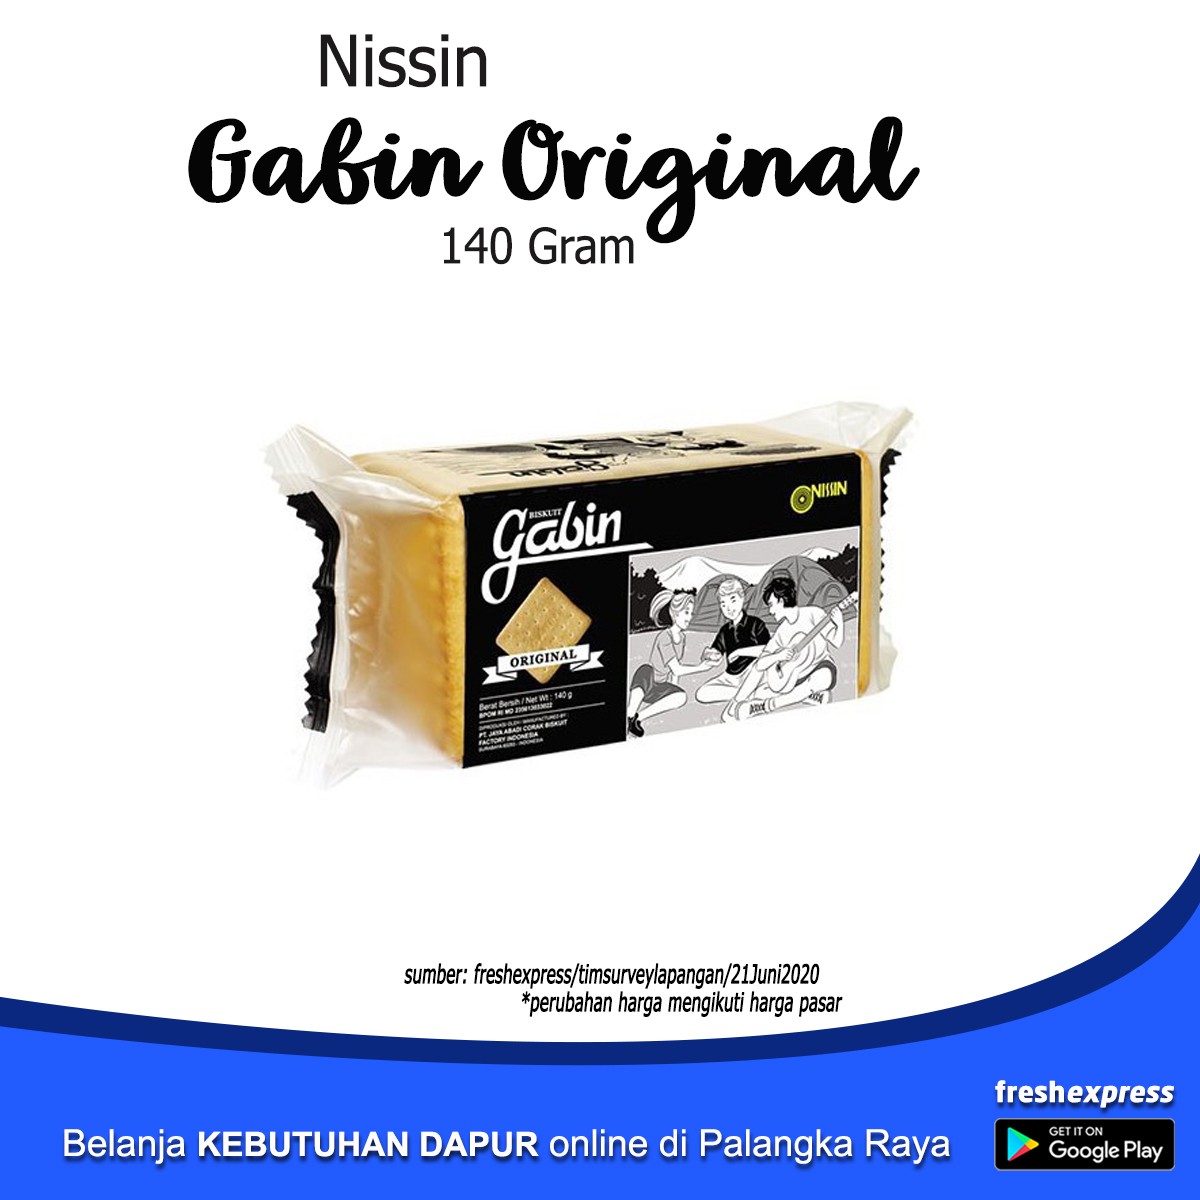 Nissin Gabin Original 140 Gram